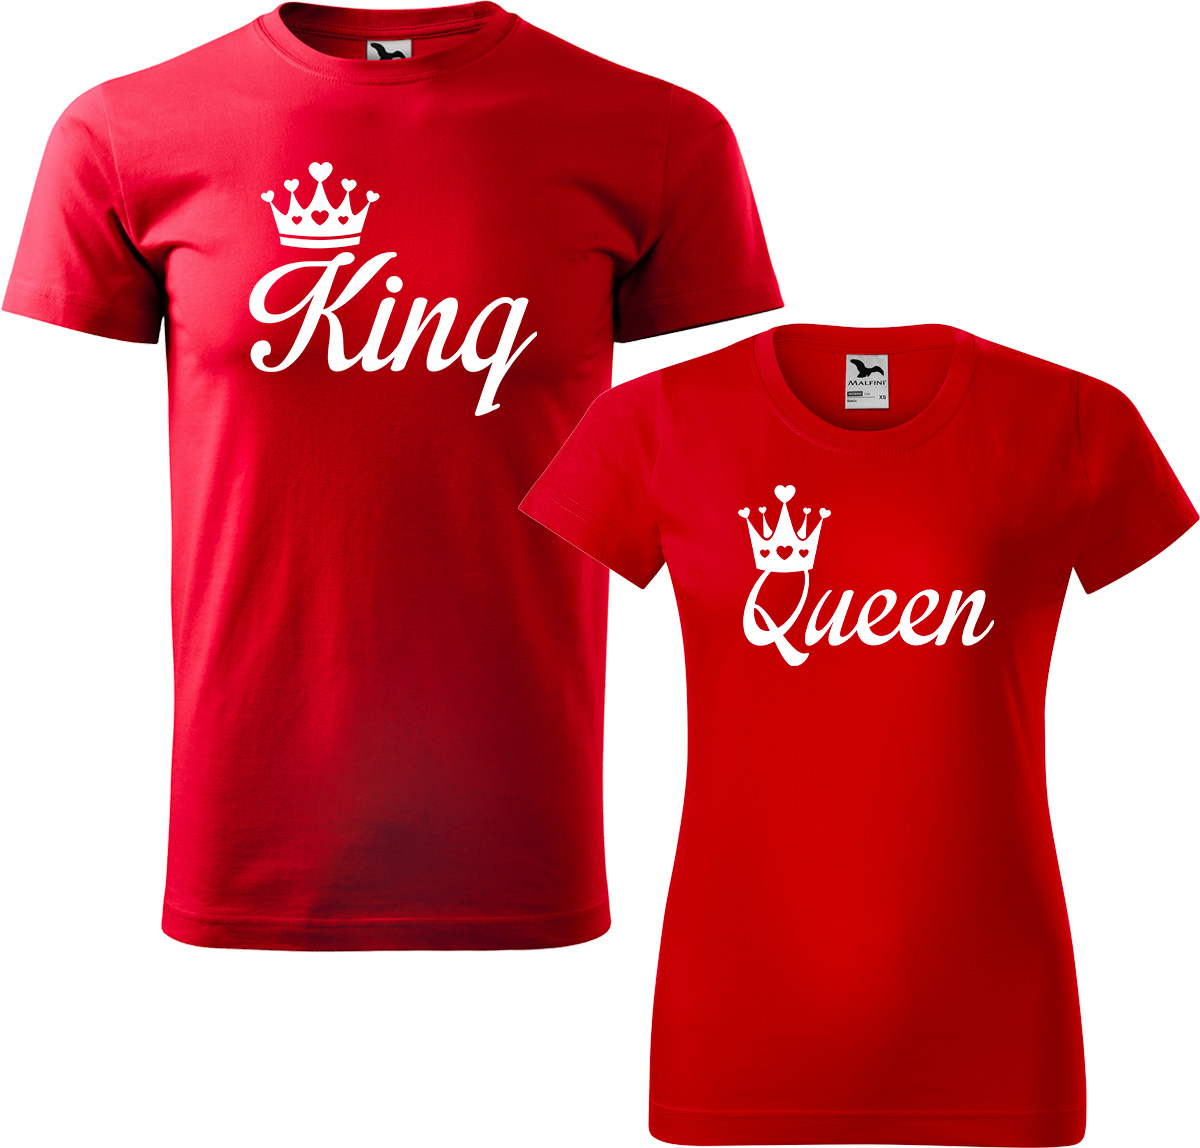 Trička pro páry - King a queen Barva: Červená (07), Velikost dámské tričko: M, Velikost pánské tričko: M